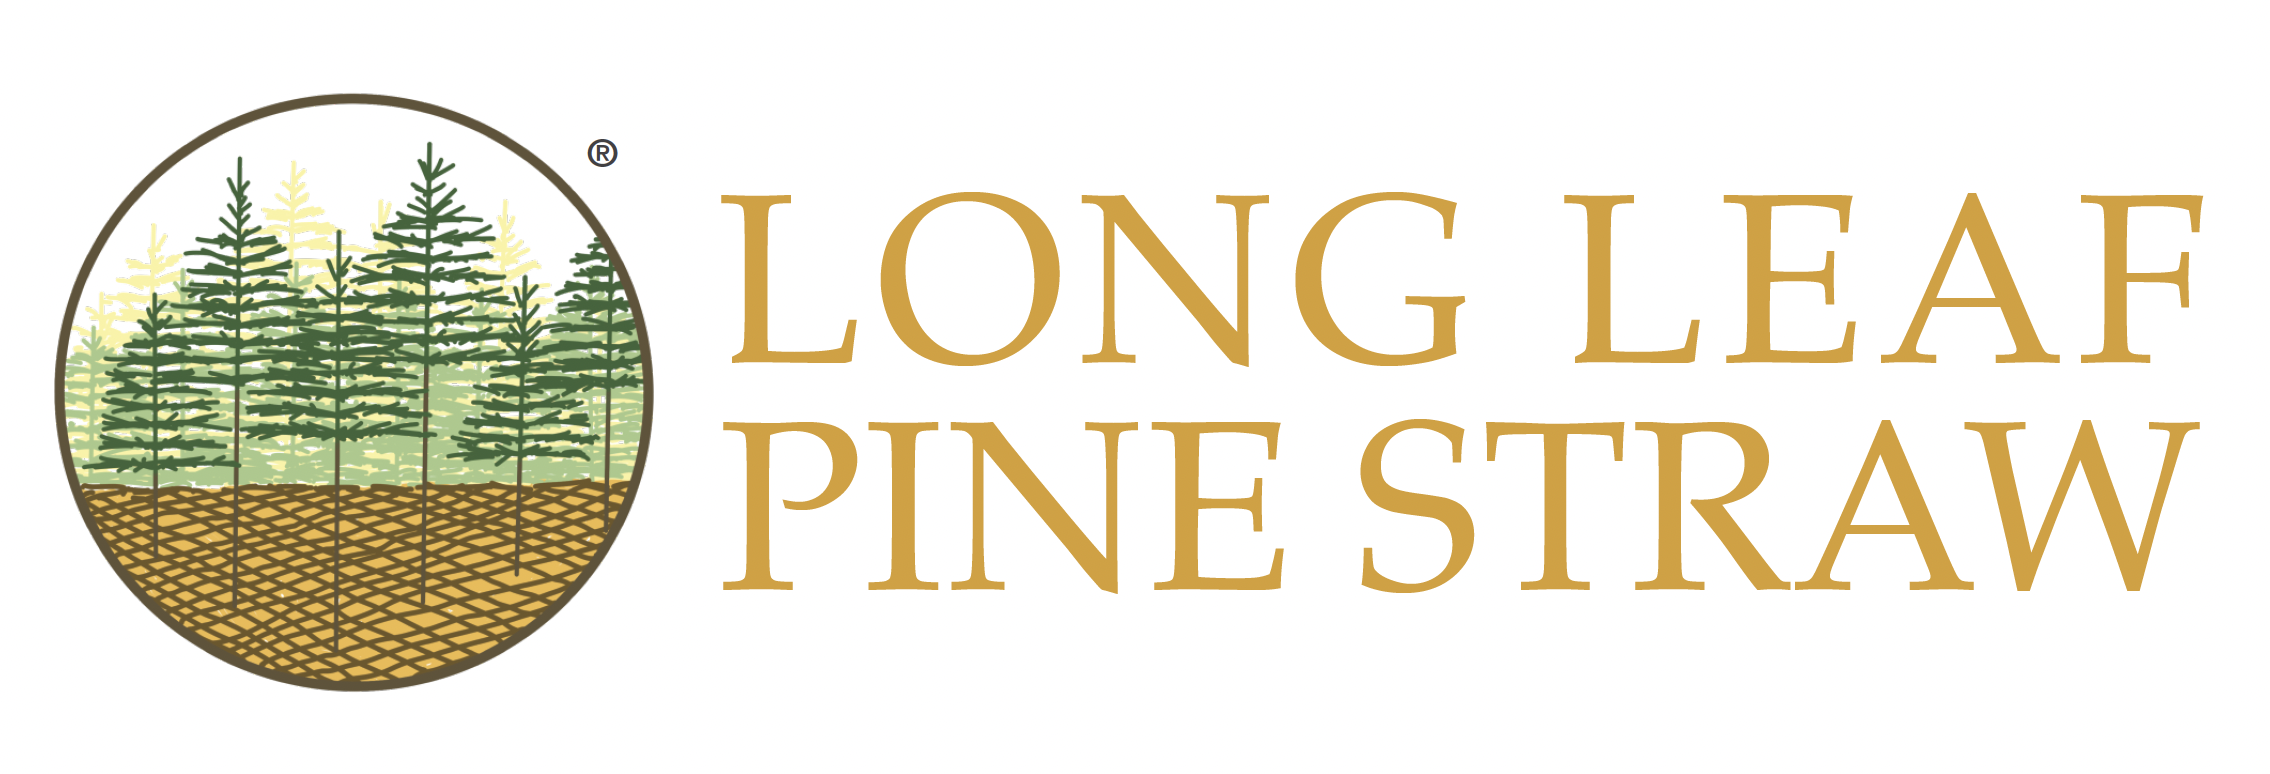 Long Leaf Pine Straw logo